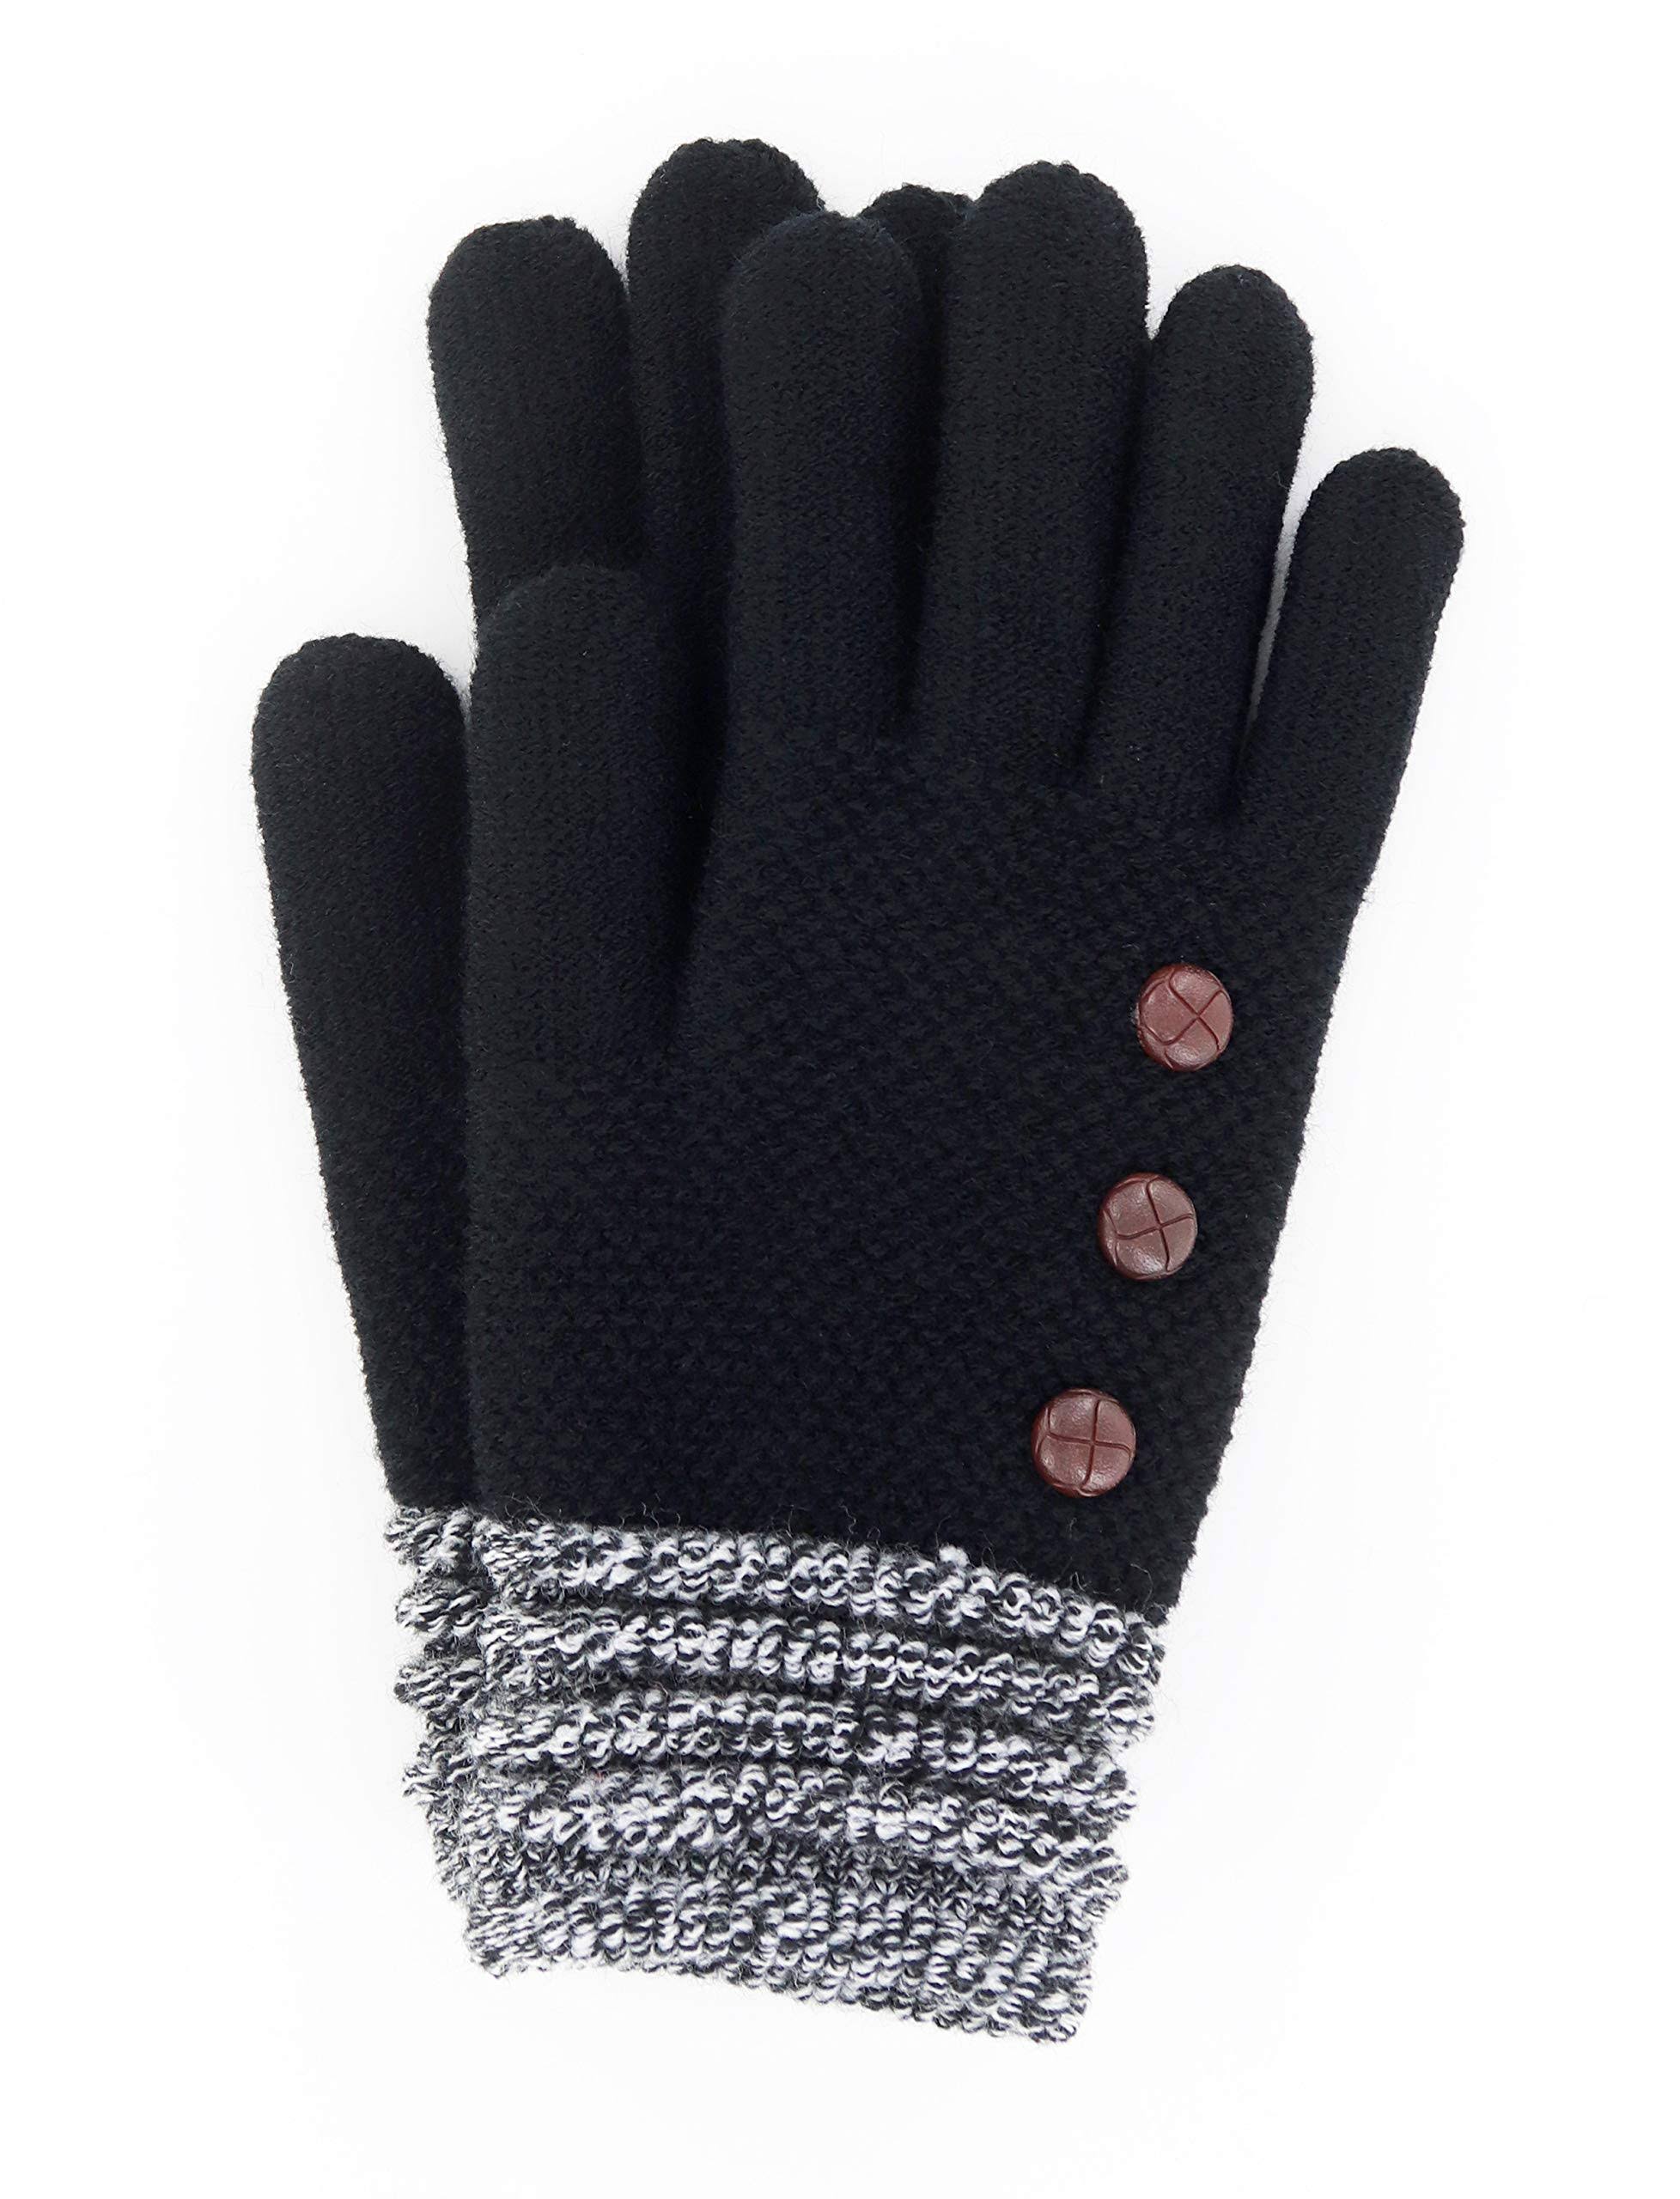 Britt's Knits Women's Cold Weather Gloves Black